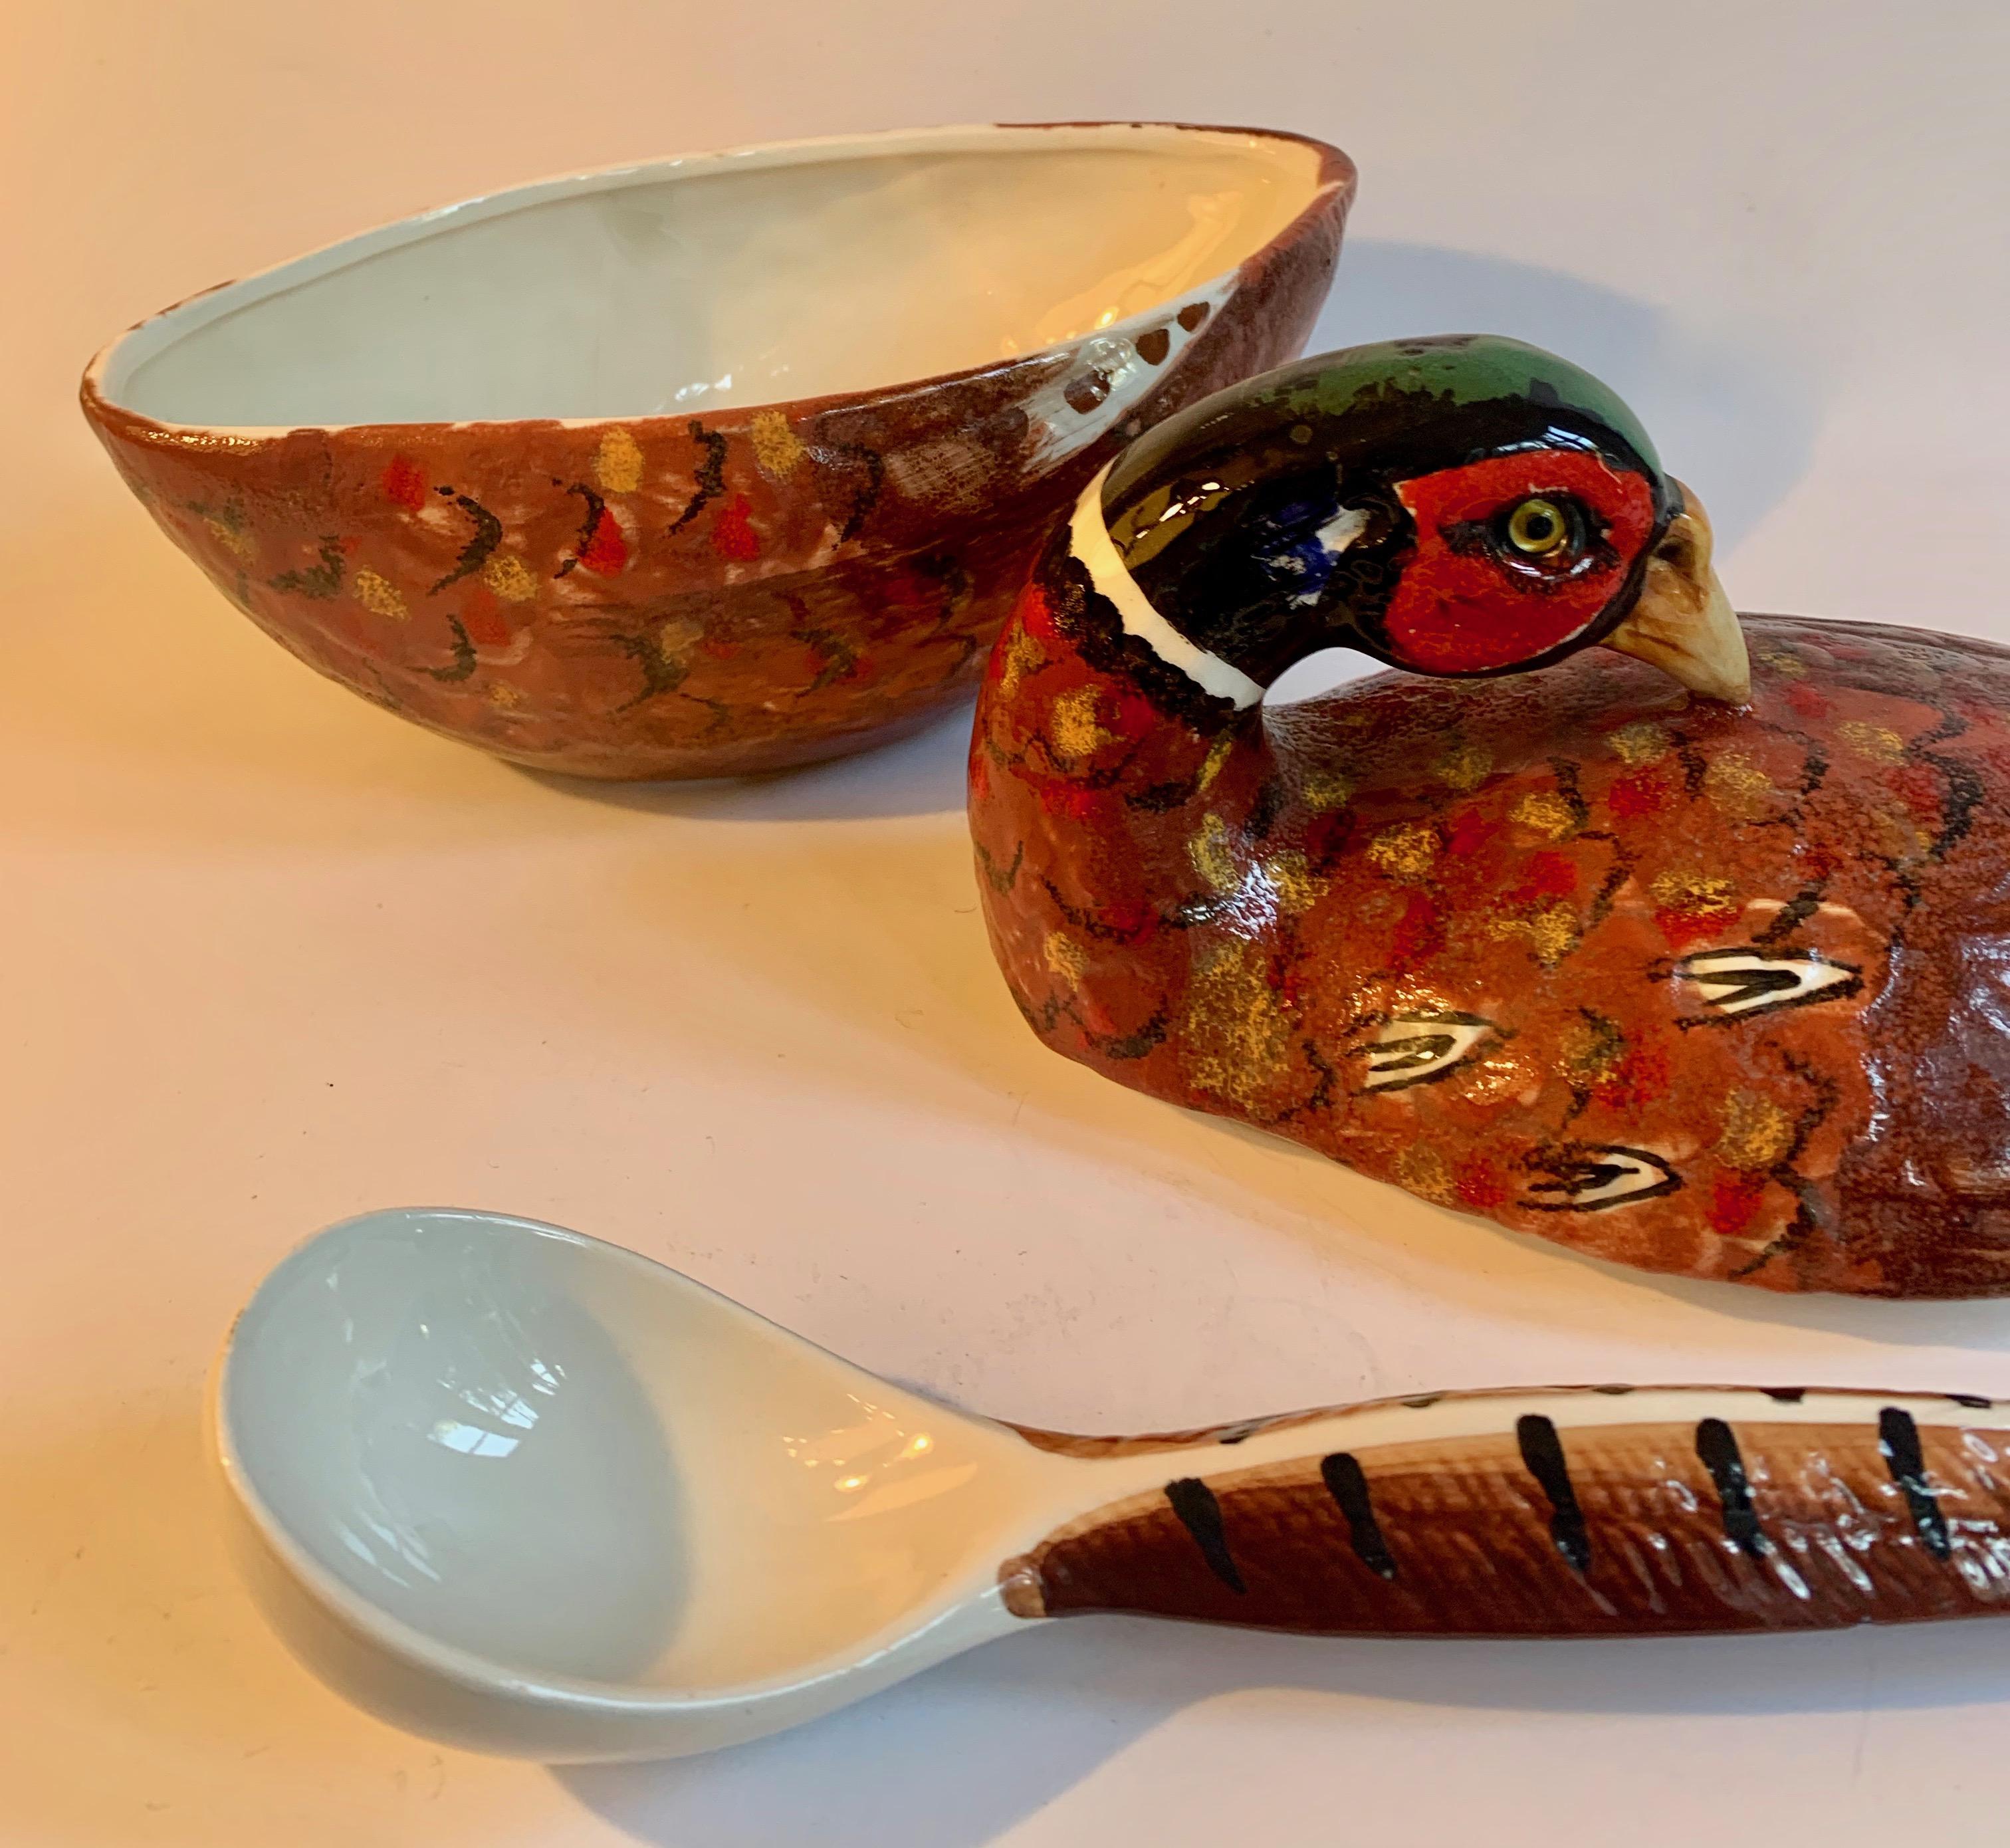 Italienische handbemalte Keramik-Fasanensuppen-Terrine mit Schöpflöffel. Eine Suppen- oder Soßenterrine mit einer handgemalten vogelähnlichen Form und einer Kelle als Schwanz. Ein wunderbares Stück für ein gemeinsames Dankeschön oder ein einfaches